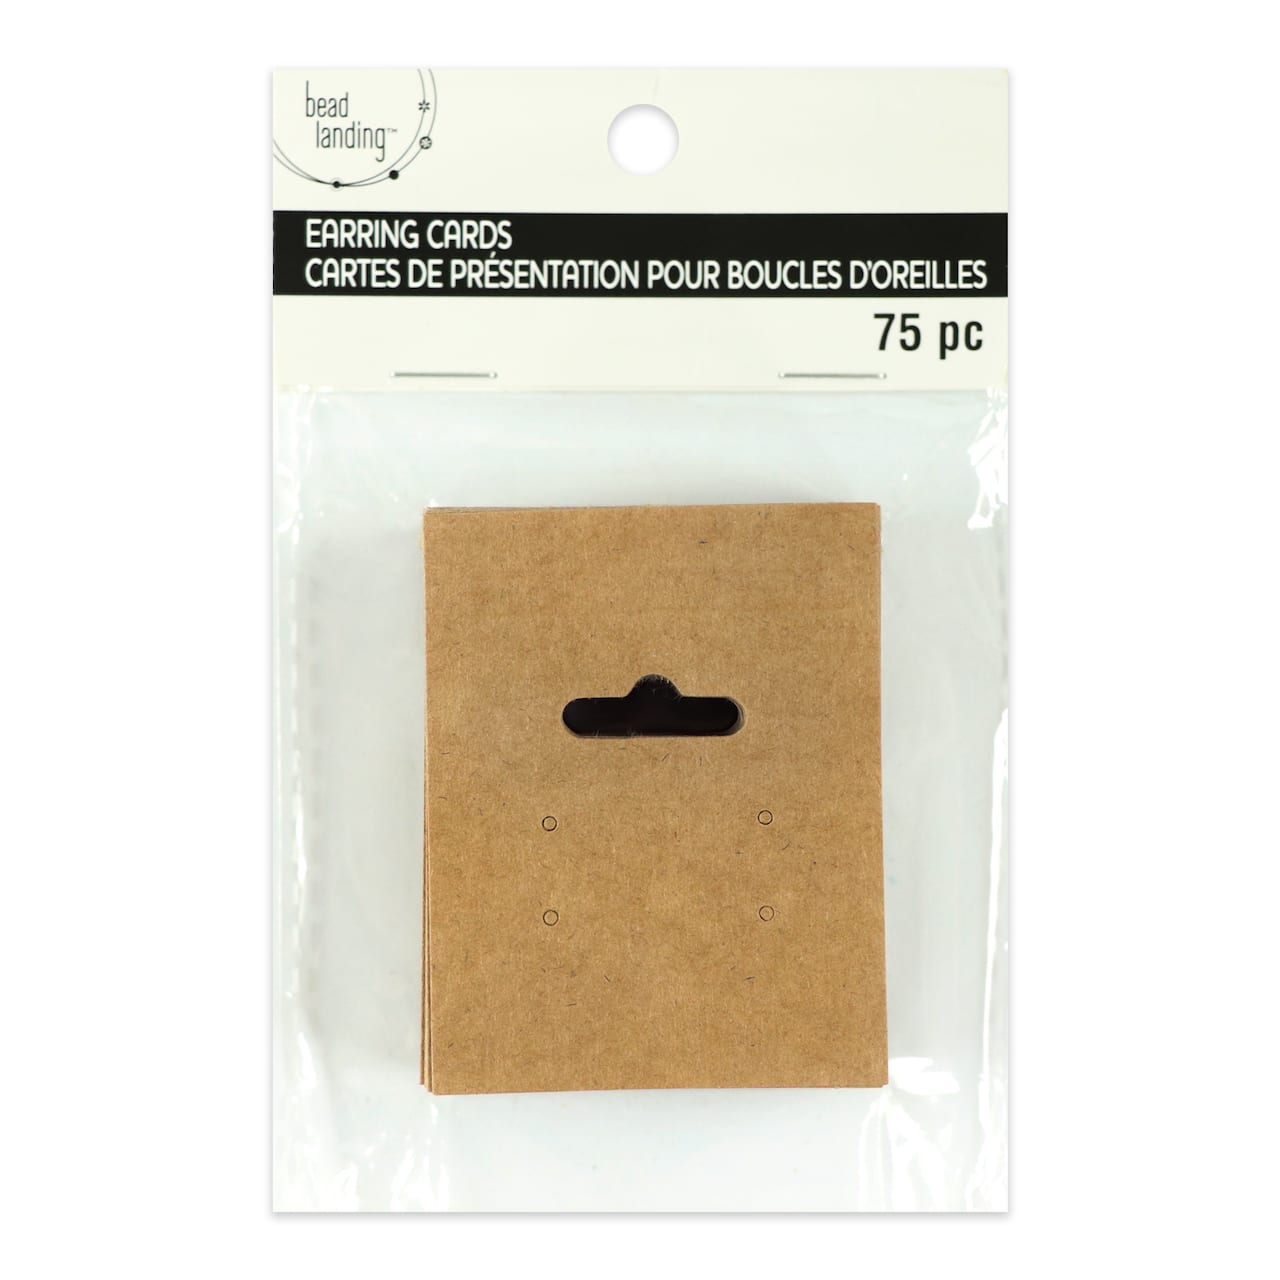 12 Packs: 75 ct. (900 total) Kraft Paper Earring Cards by Bead Landing™